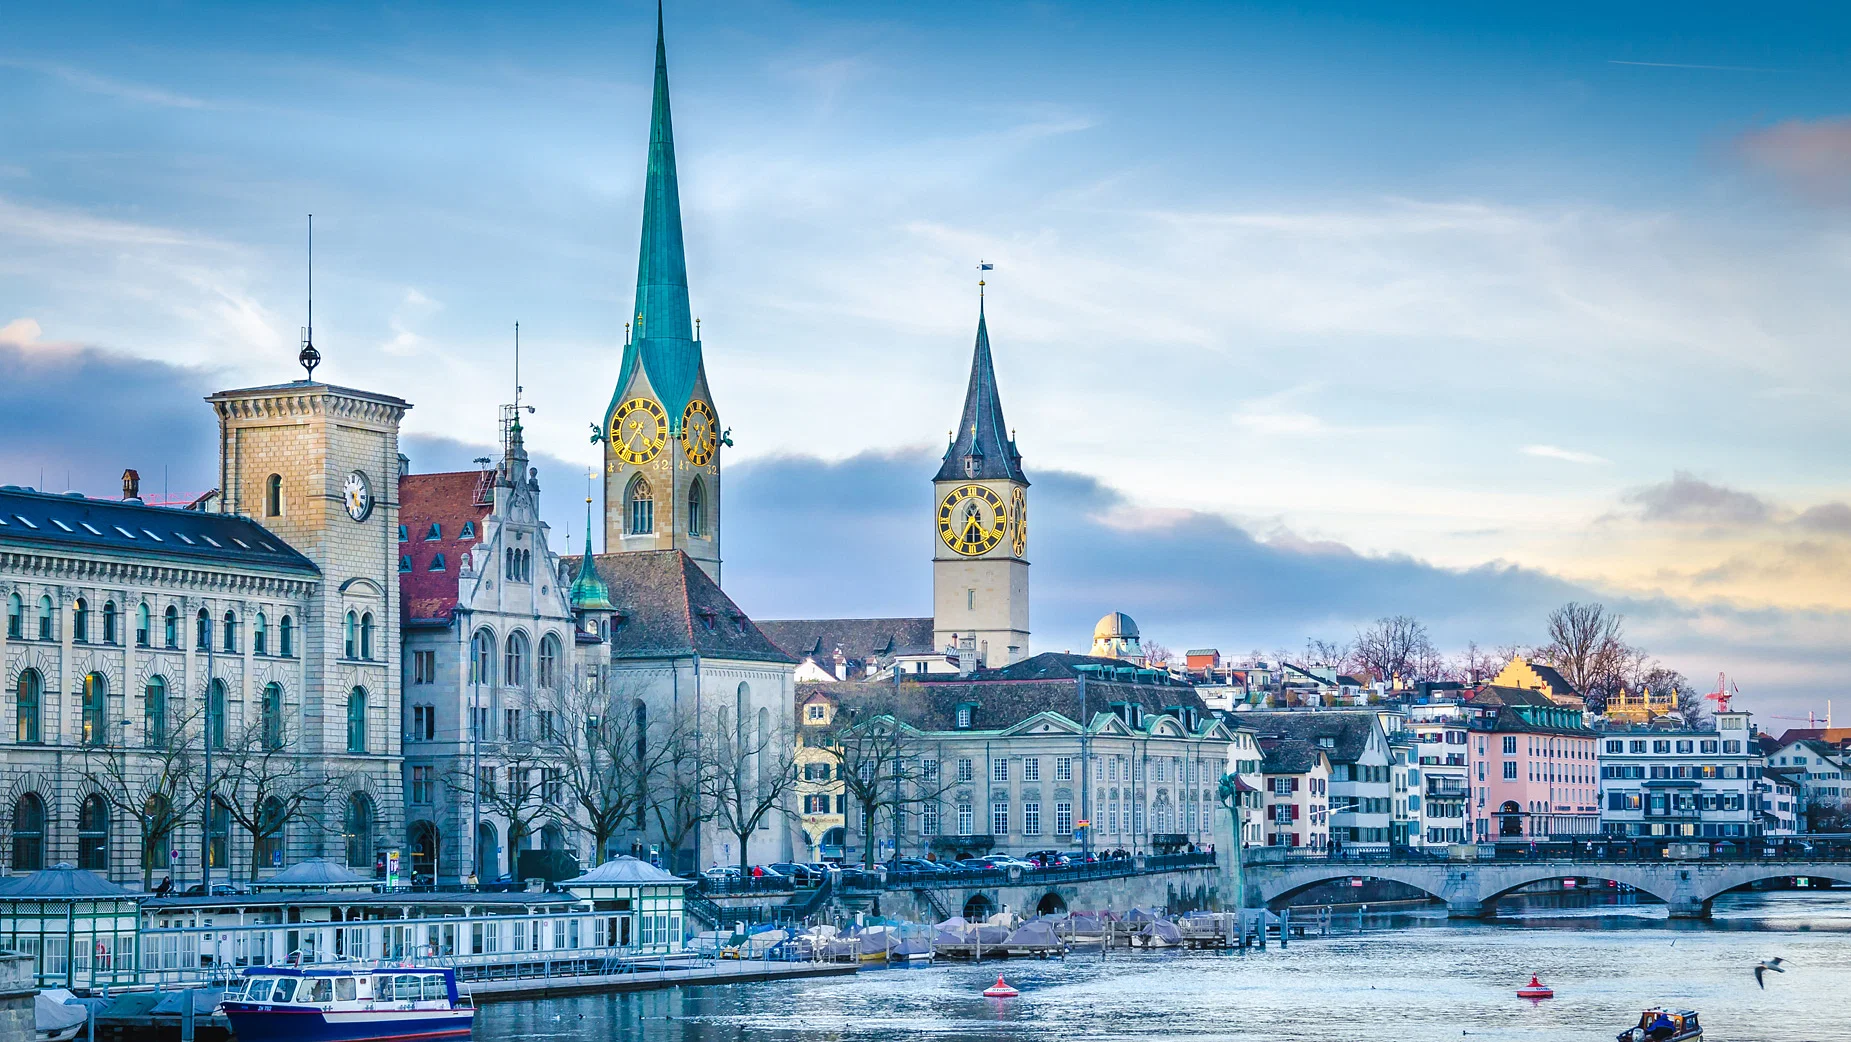 Ζυρίχη: Δέκα διαφορετικές εμπειρίες που αξίζει να ζήσεις στη μεγαλύτερη πόλη της Ελβετίας!